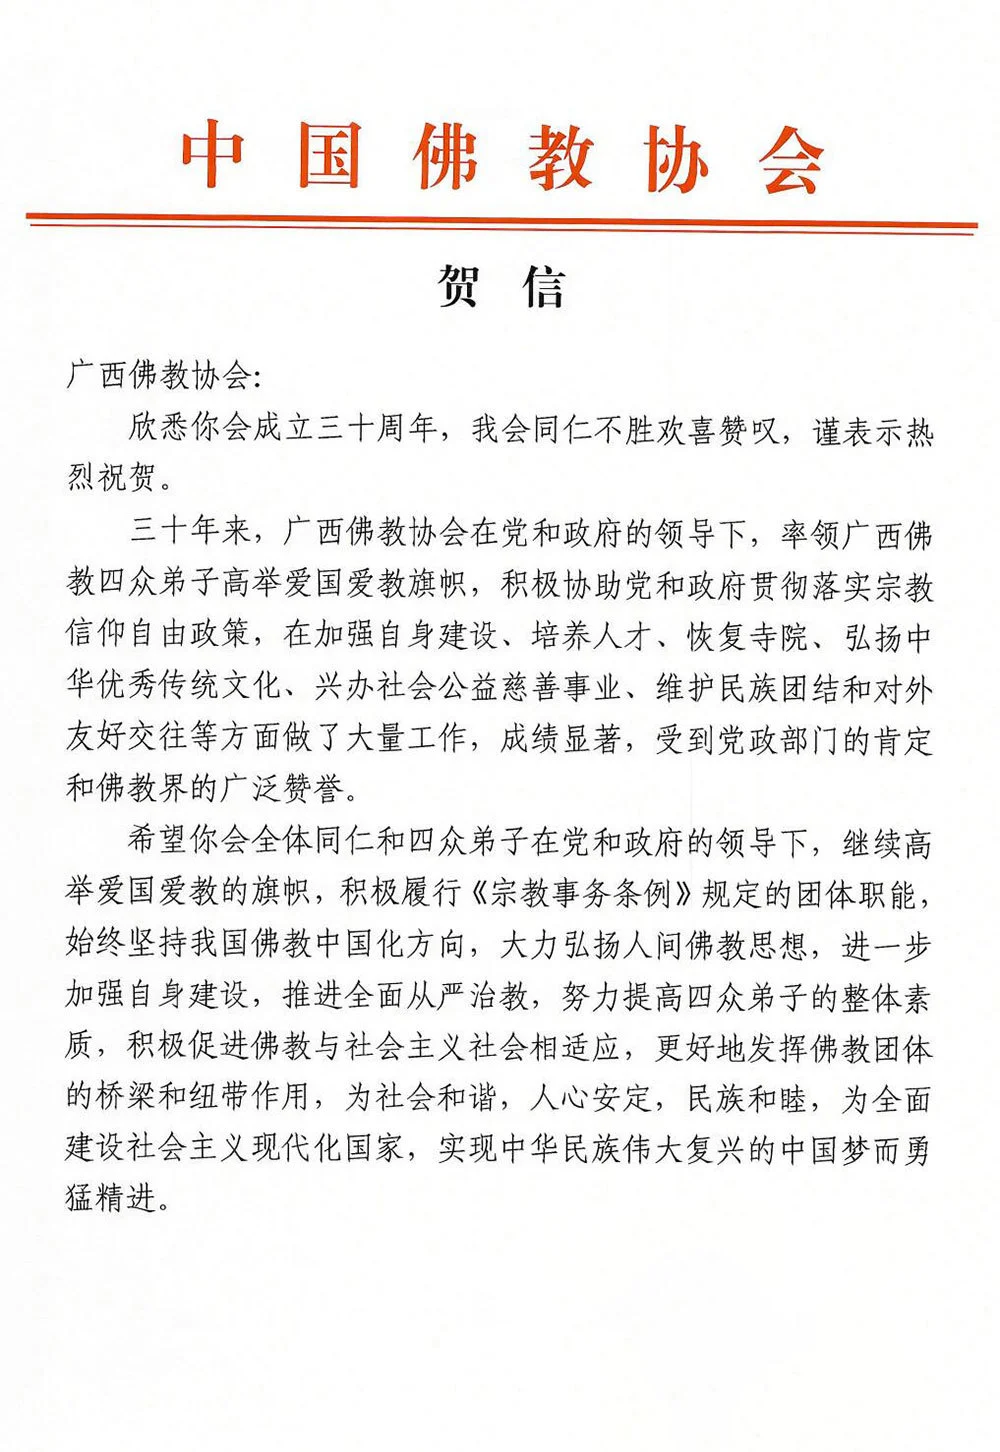 中国佛教协会贺信：热烈祝贺广西佛教协会成立三十周年，欢喜赞叹